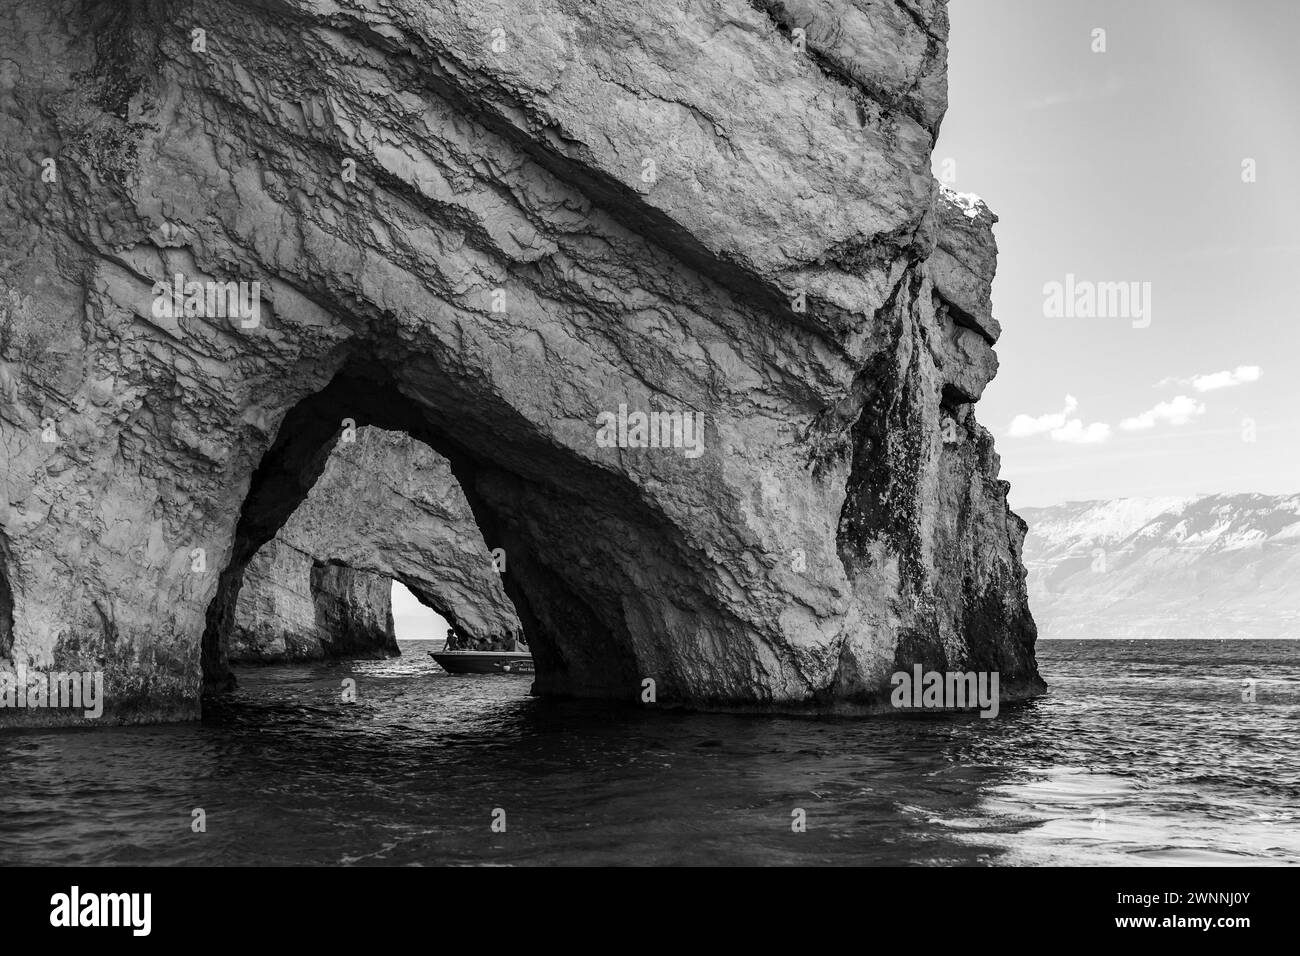 Zakynthos, Grèce - 20 août 2016 : touriste en bateau visite la grotte bleue, vue sur la mer. Formations côtières de l'île grecque de Zakynthos dans la mer Ionienne. Po Banque D'Images